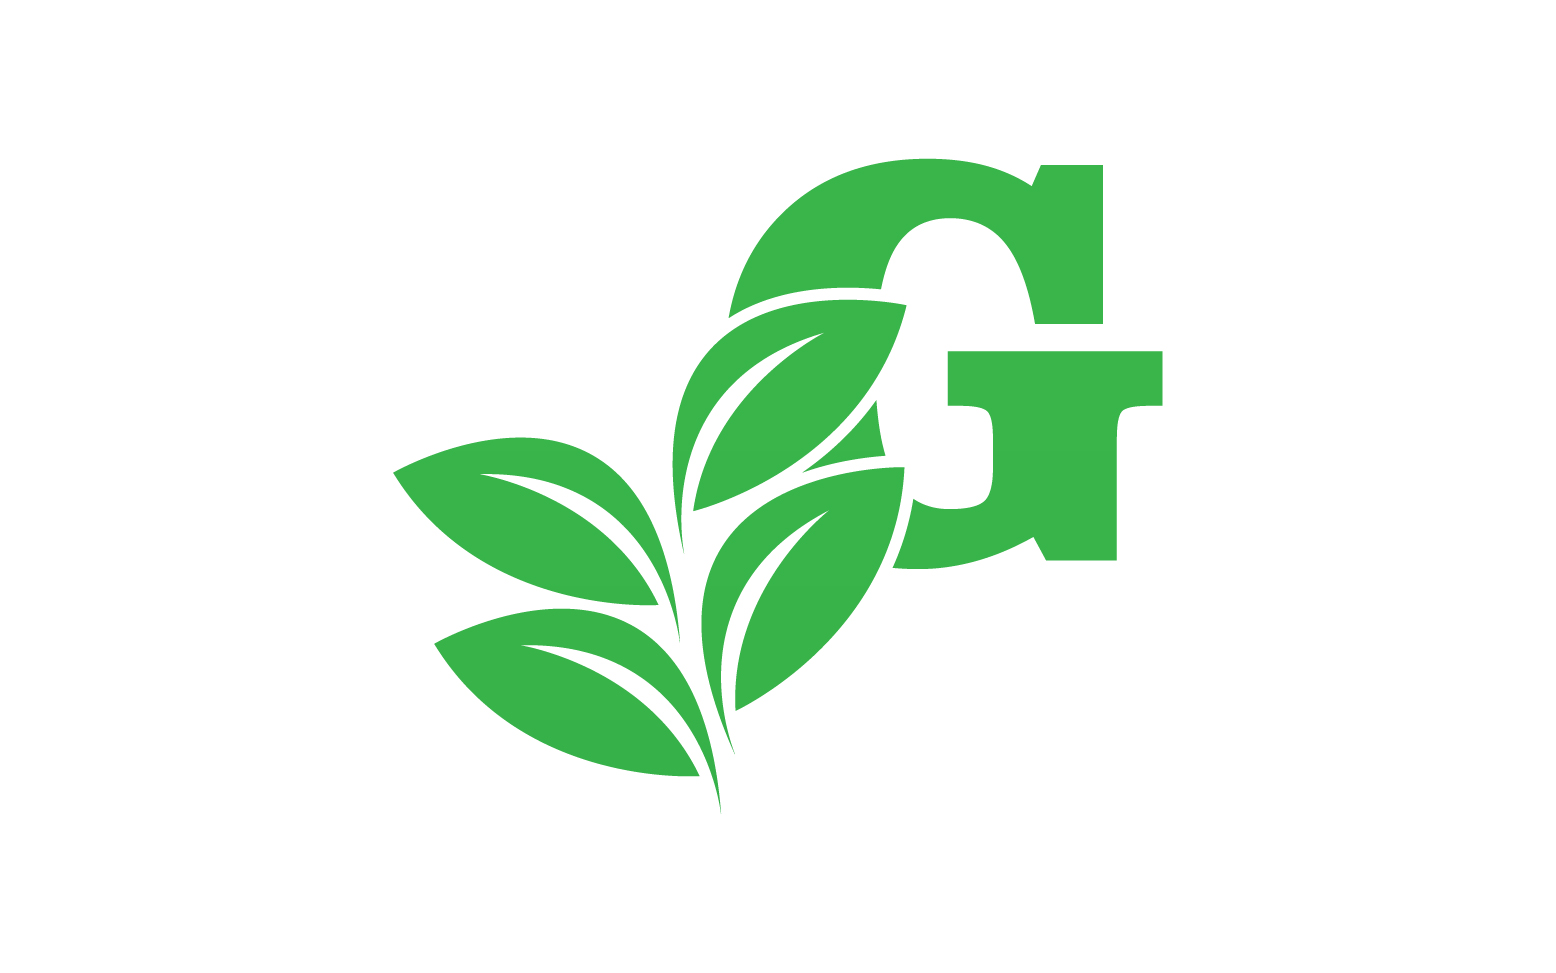 G letter leaf green logo icon version v28